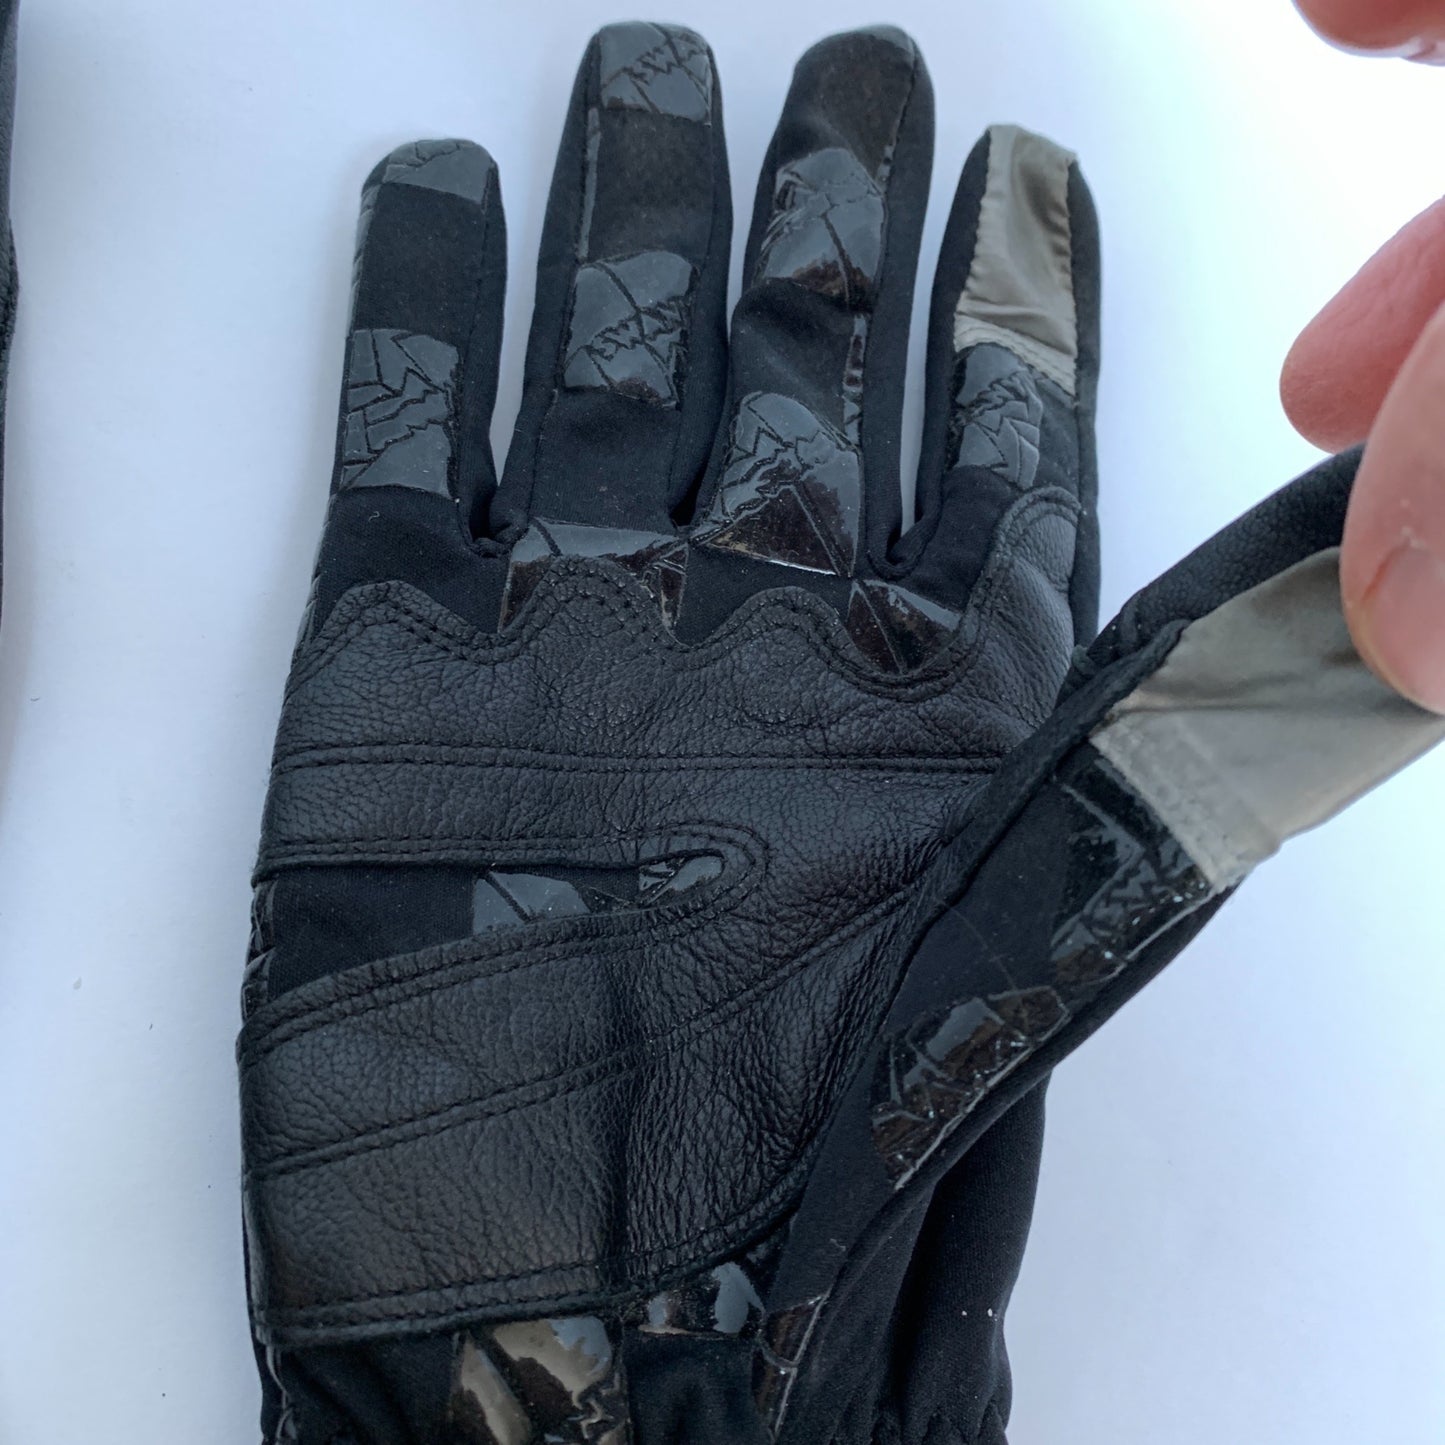 Swany iNdex Gloves RC-25 RN59381 Men’s Medium